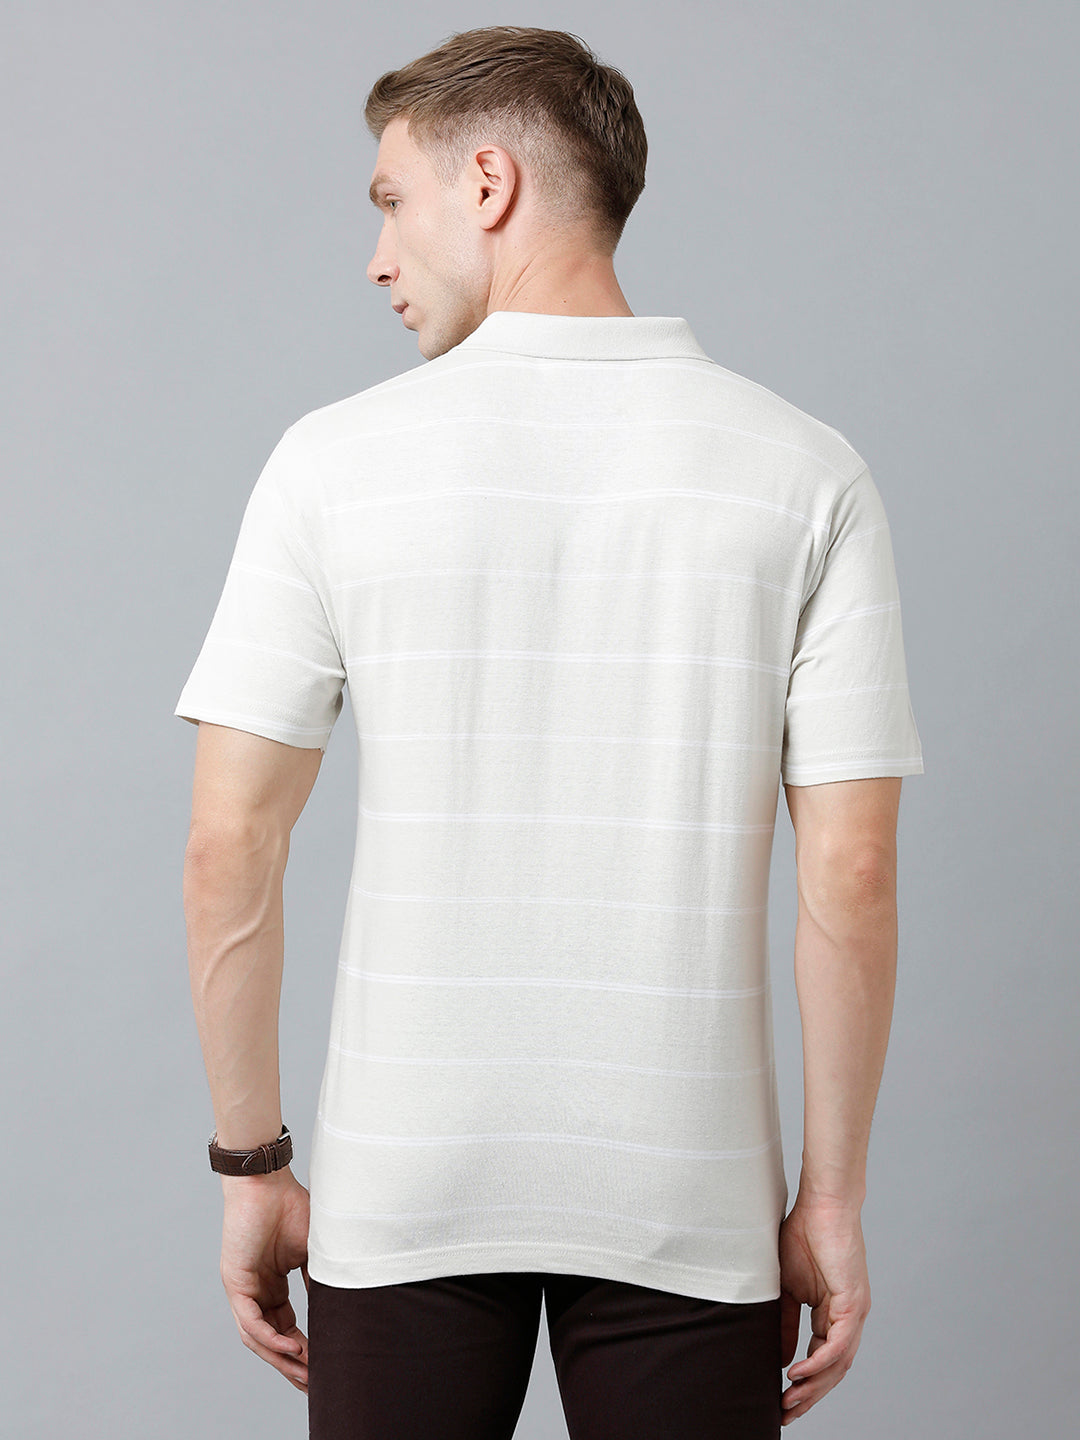 Classic Polo Men's Cotton Blend Half Sleeve Striped Authentic Fit Polo Neck Beige Color T-Shirt | Avon - 516 B